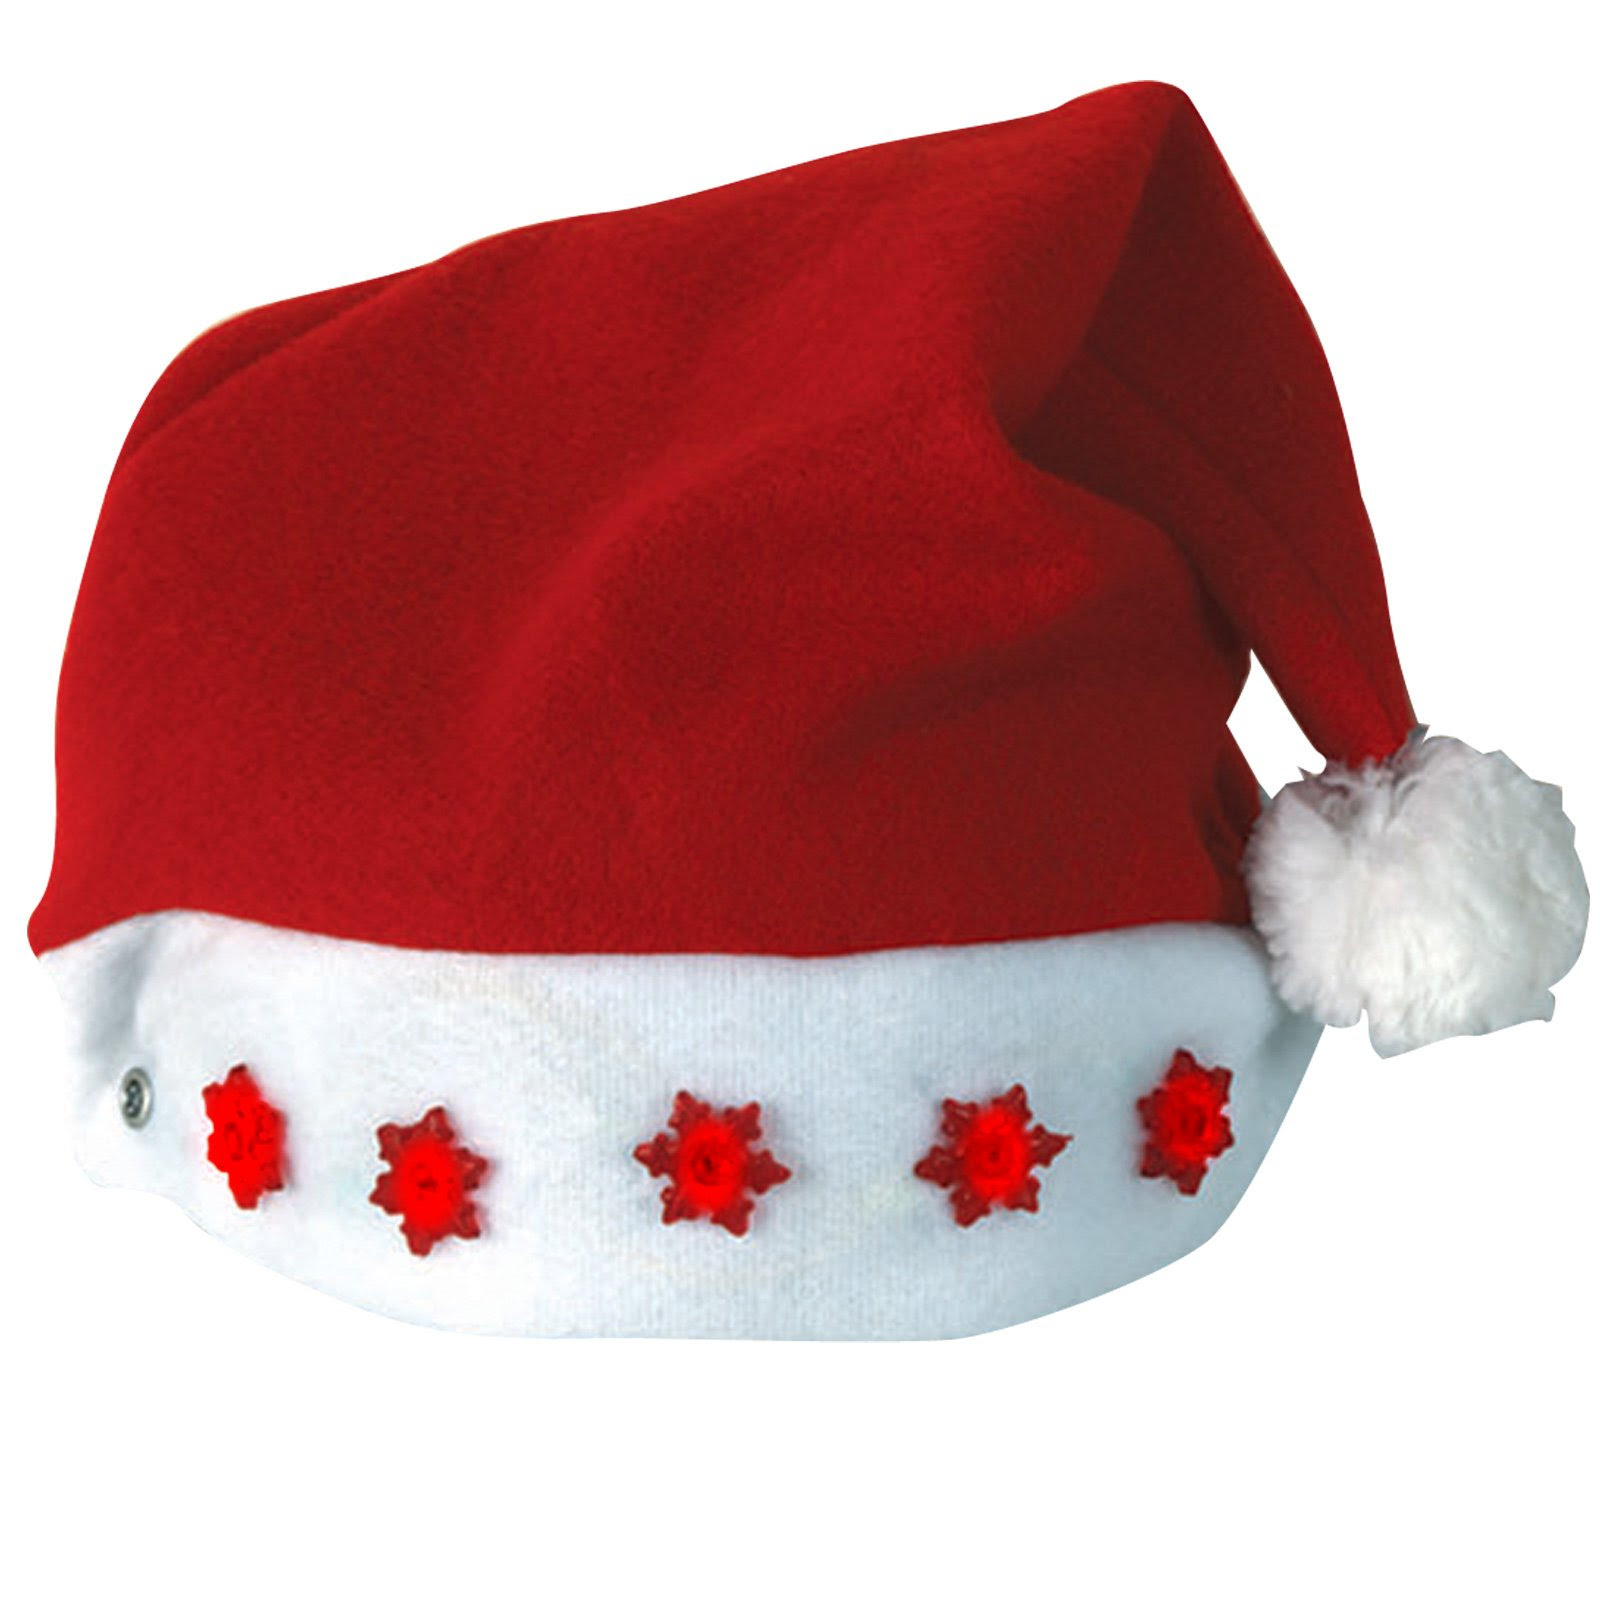 Christmas Hats Roblox Free Robux 2019 Glitch - amazoncom enghuaquj roblox noob for the holidays christmas